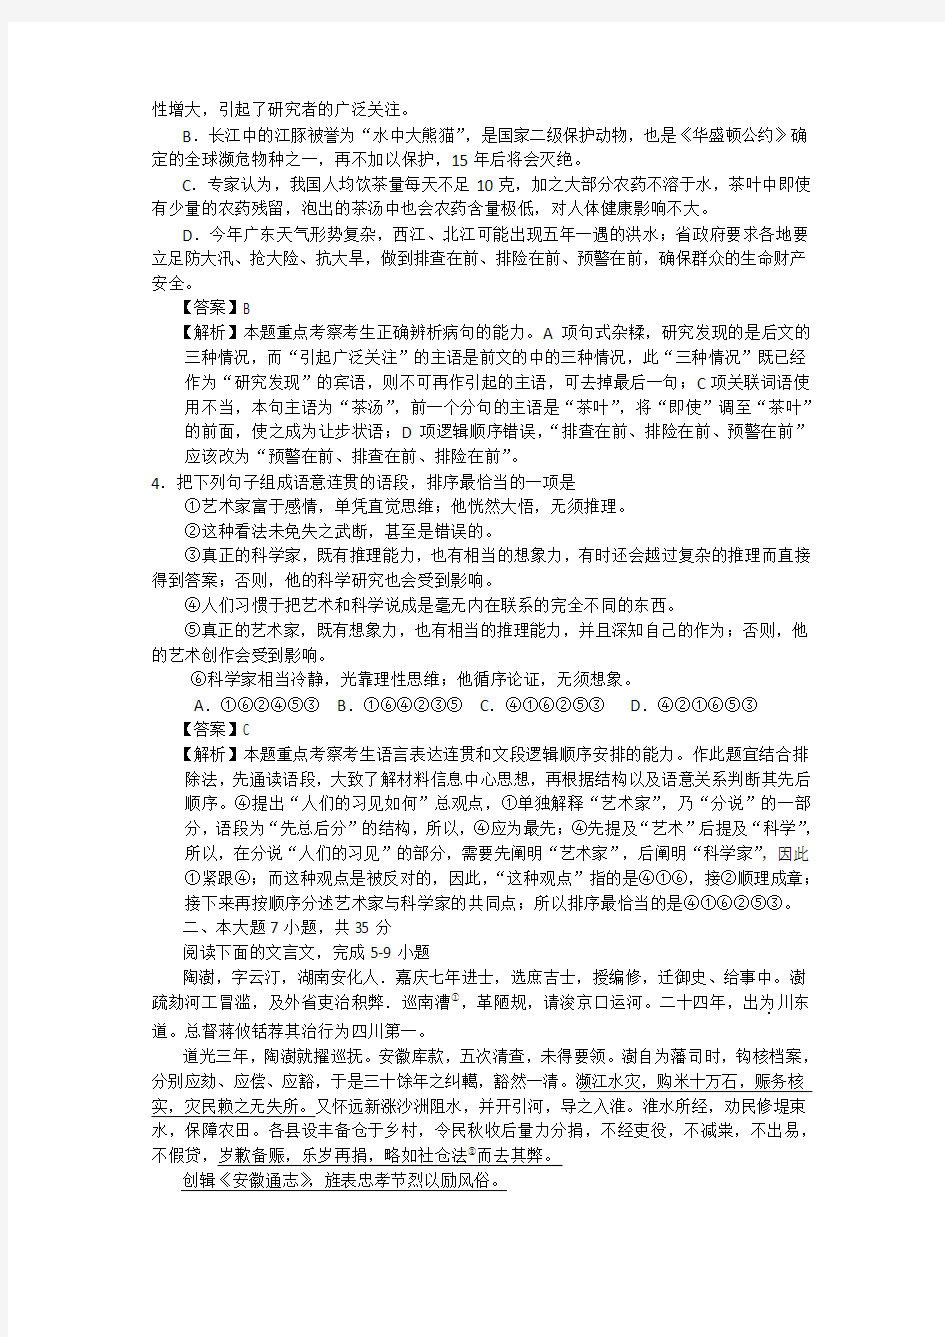 2012广东高考语文试卷及详细答案